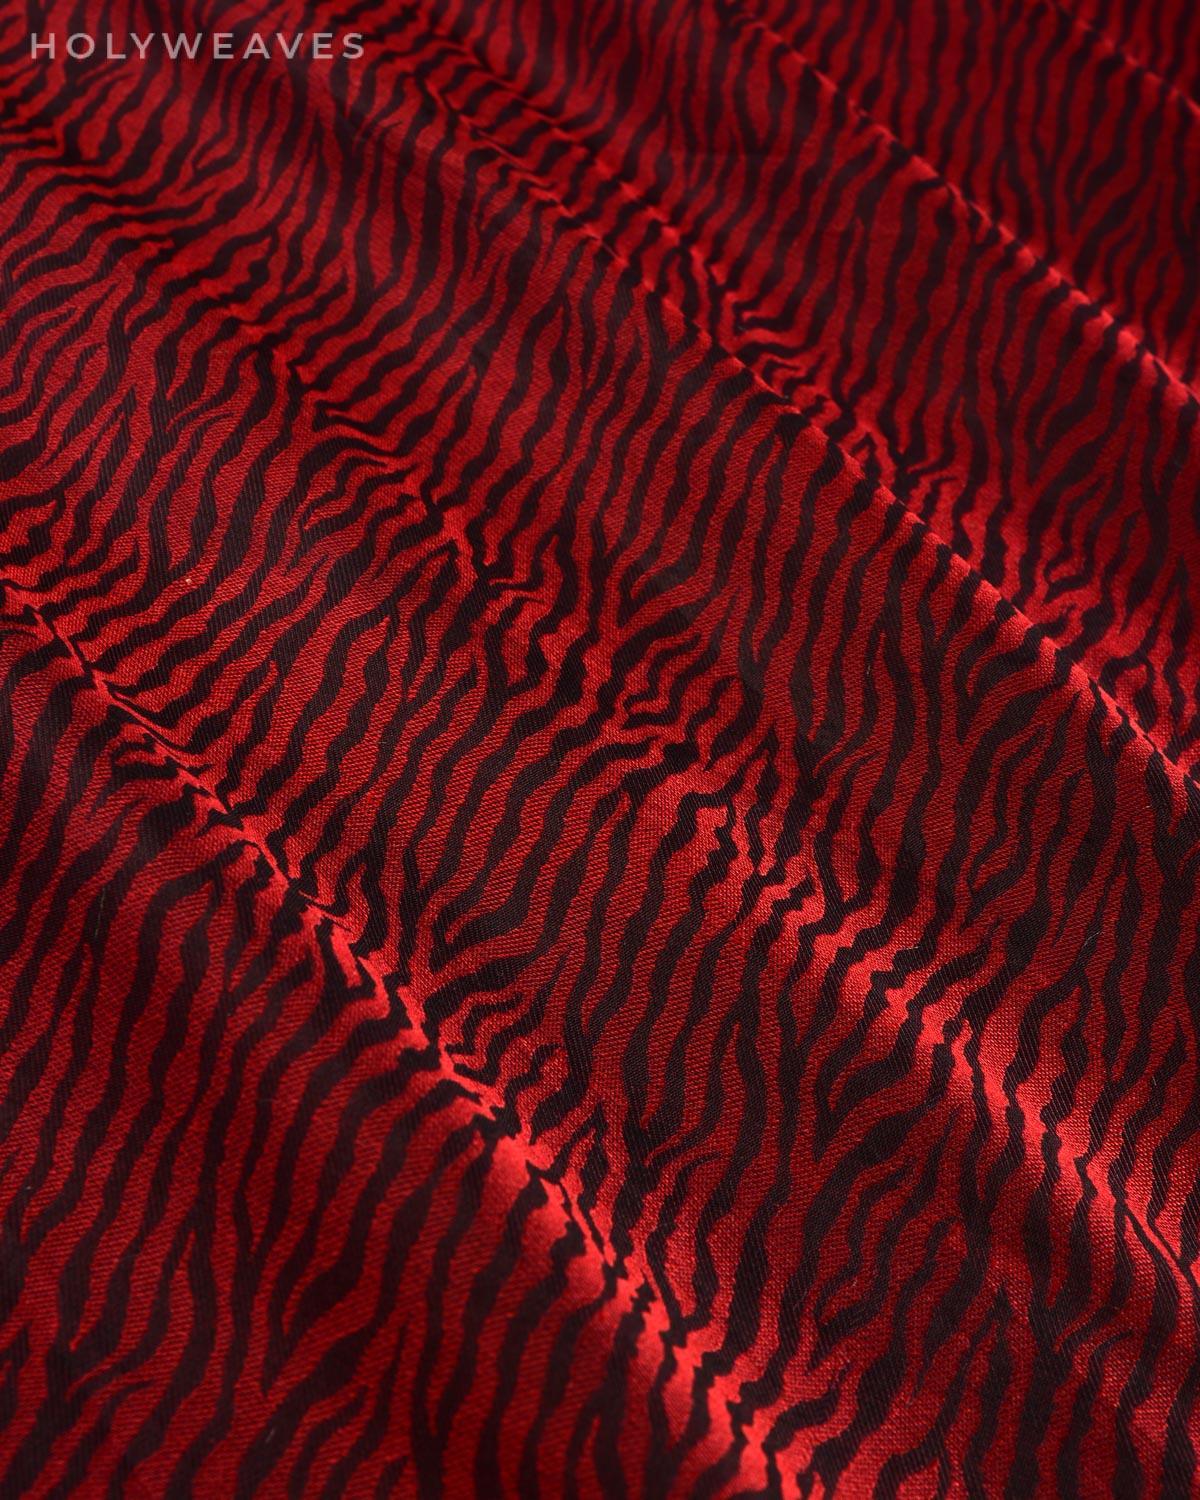 Red on Black Banarasi Tiger Resham Stripes Tanchoi Handwoven Katan Silk Fabric - By HolyWeaves, Benares